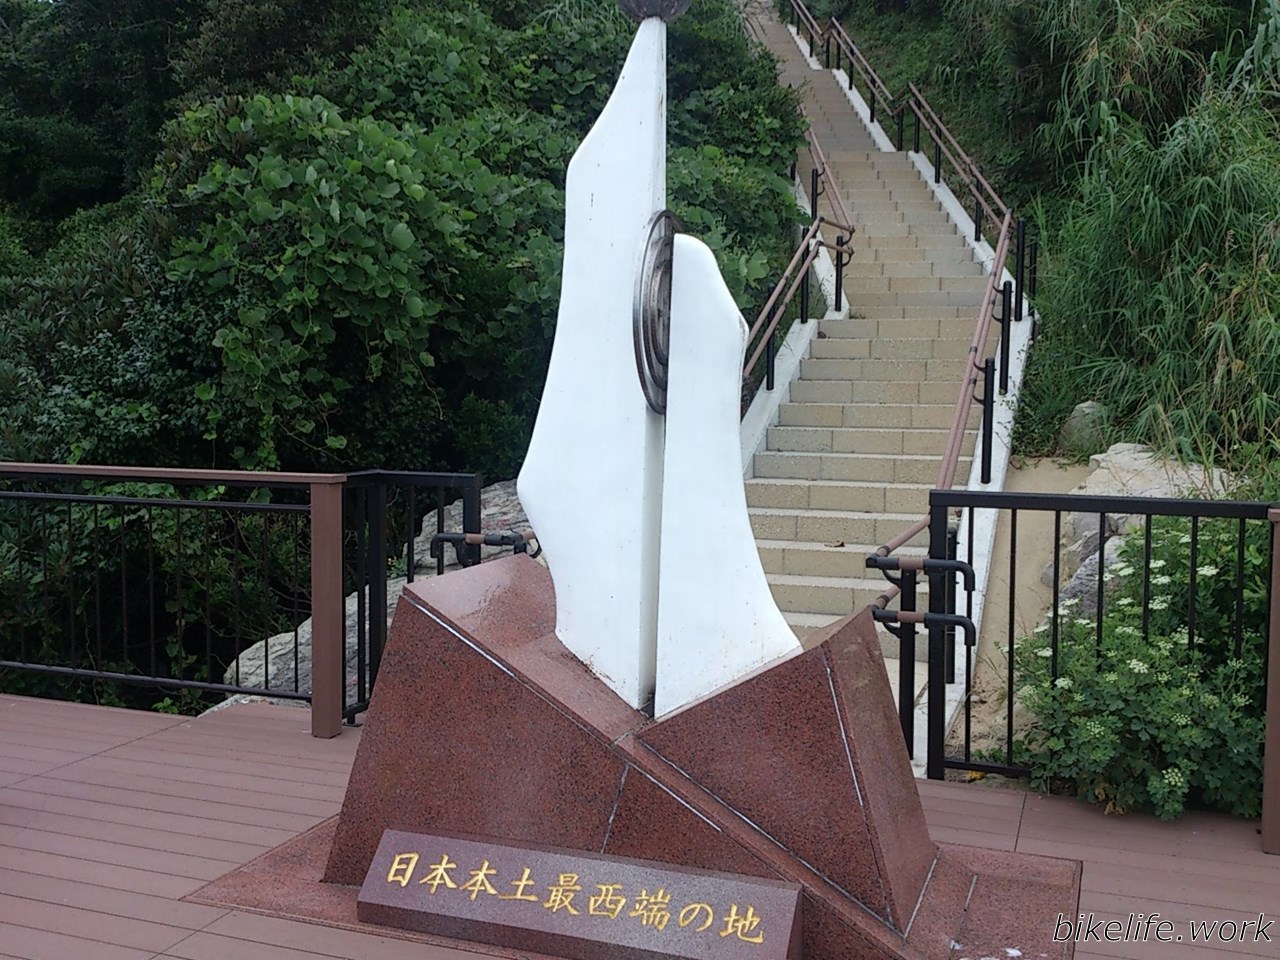 日本本土の最西端となる神崎鼻にある記念碑